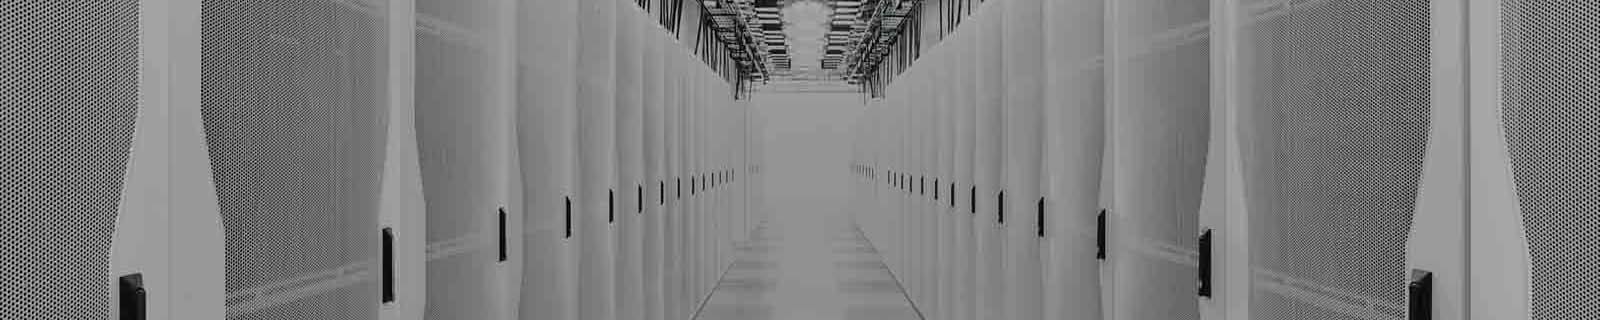 Cisco ACI per data center